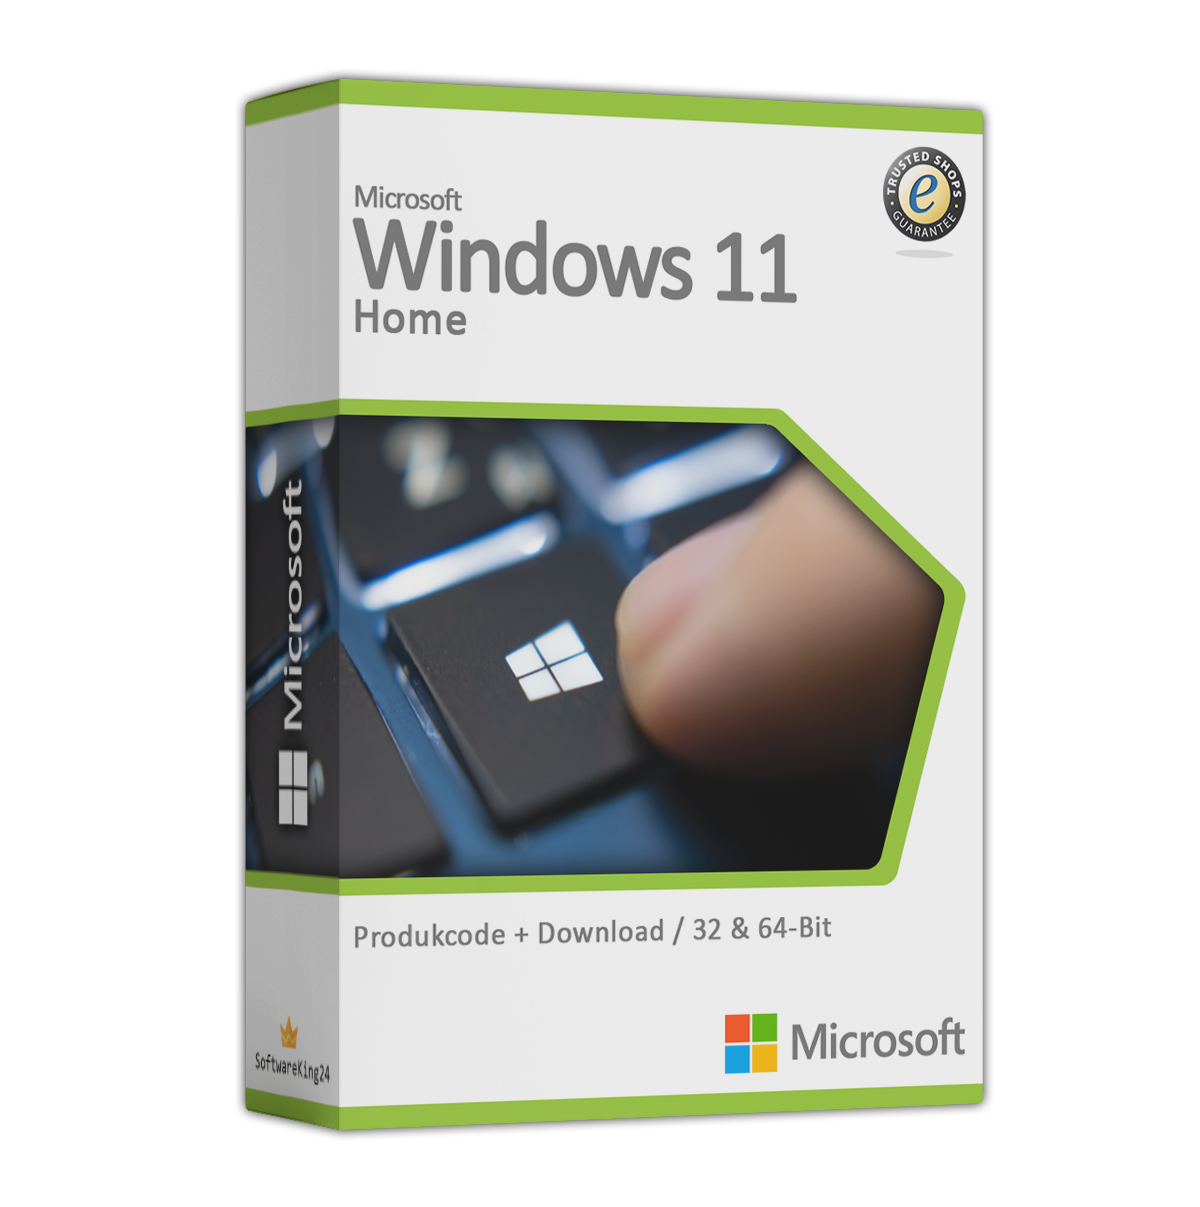 Softwareking24 Microsoft Windows 11 Home Günstig Kaufen 8131